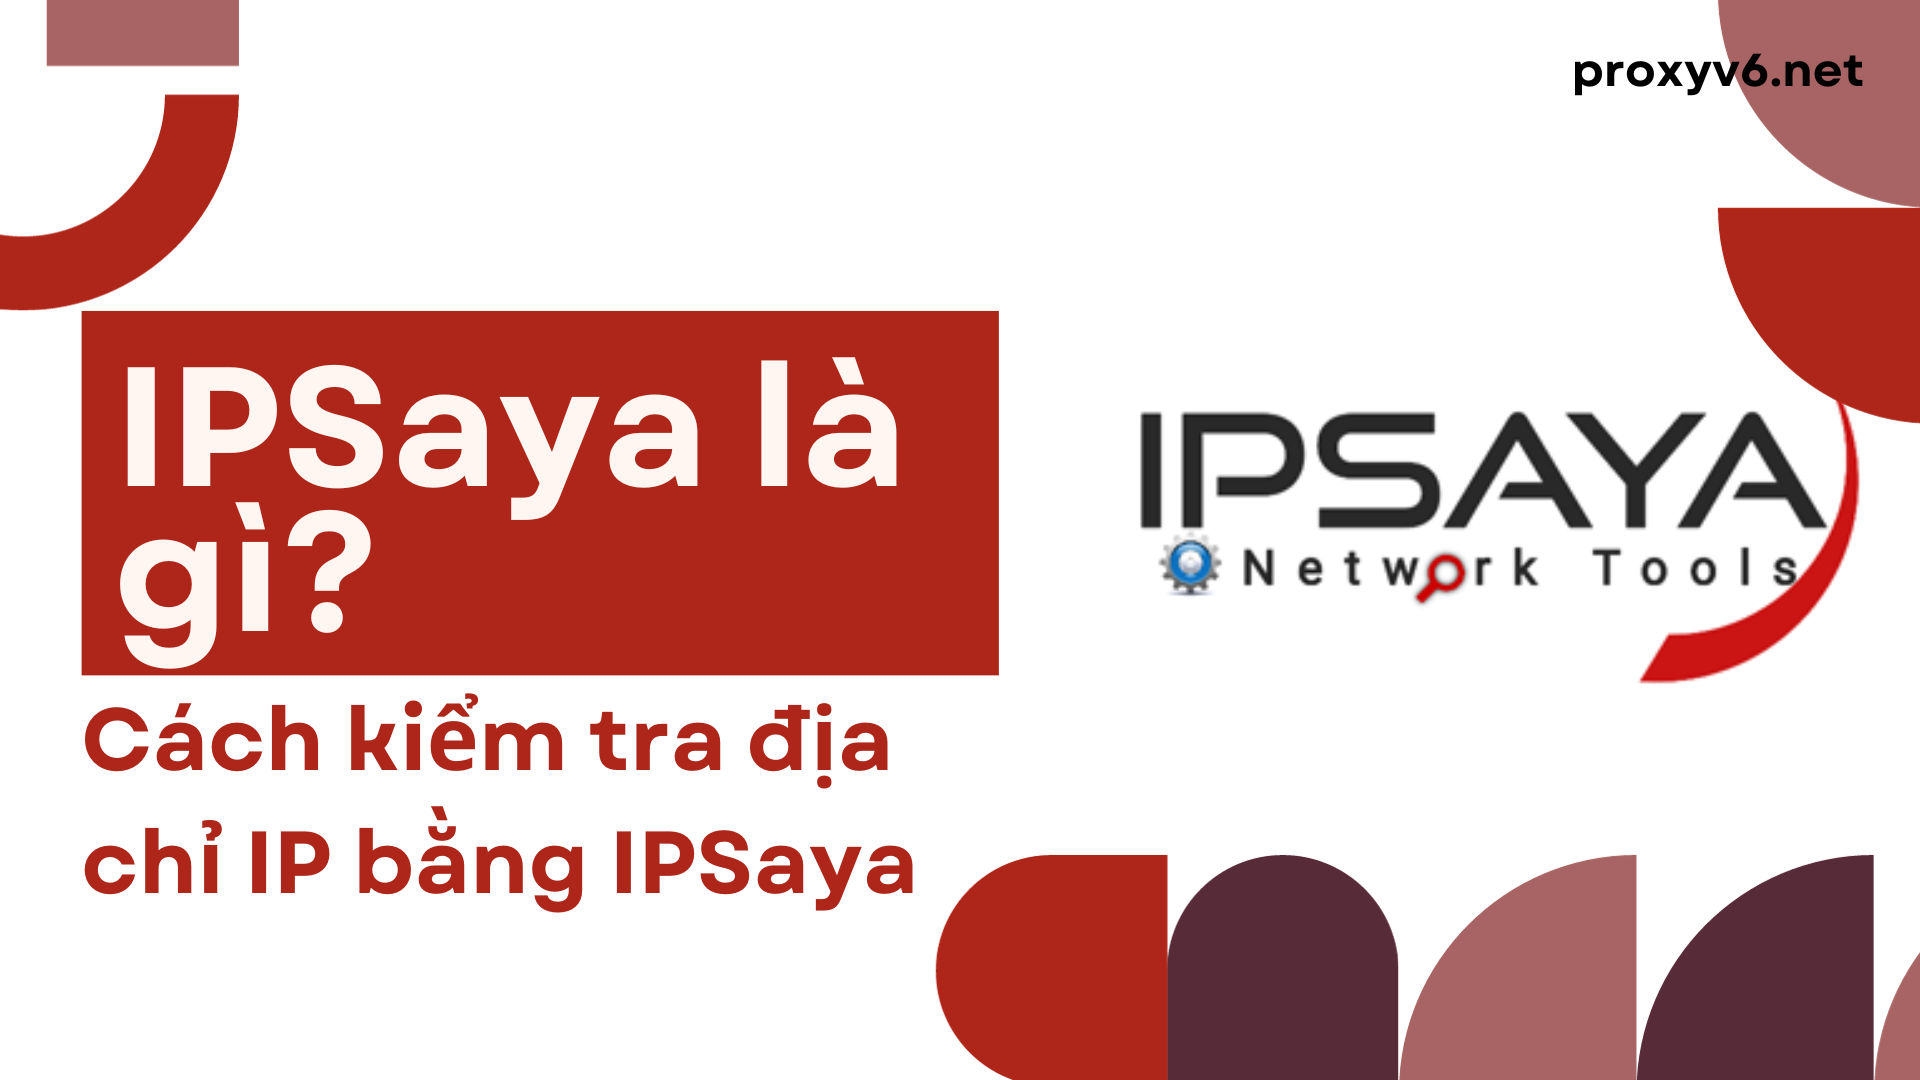 IPSaya là gì? Cách kiểm tra địa chỉ IP bằng IPSaya